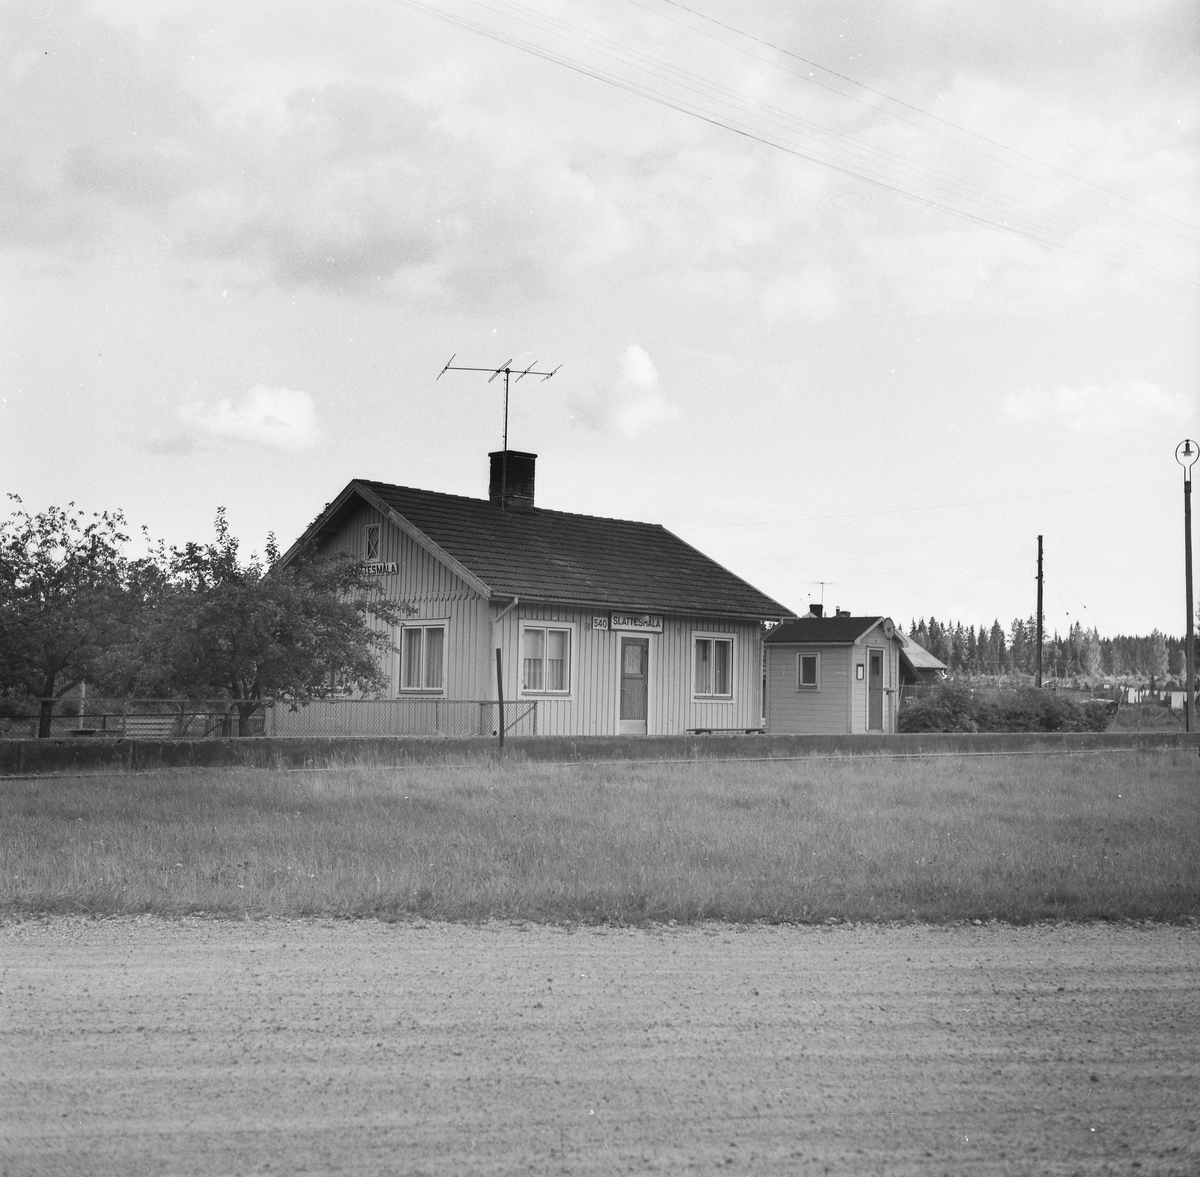 Slattesmåla håll- och lastplats anlagd 1876.